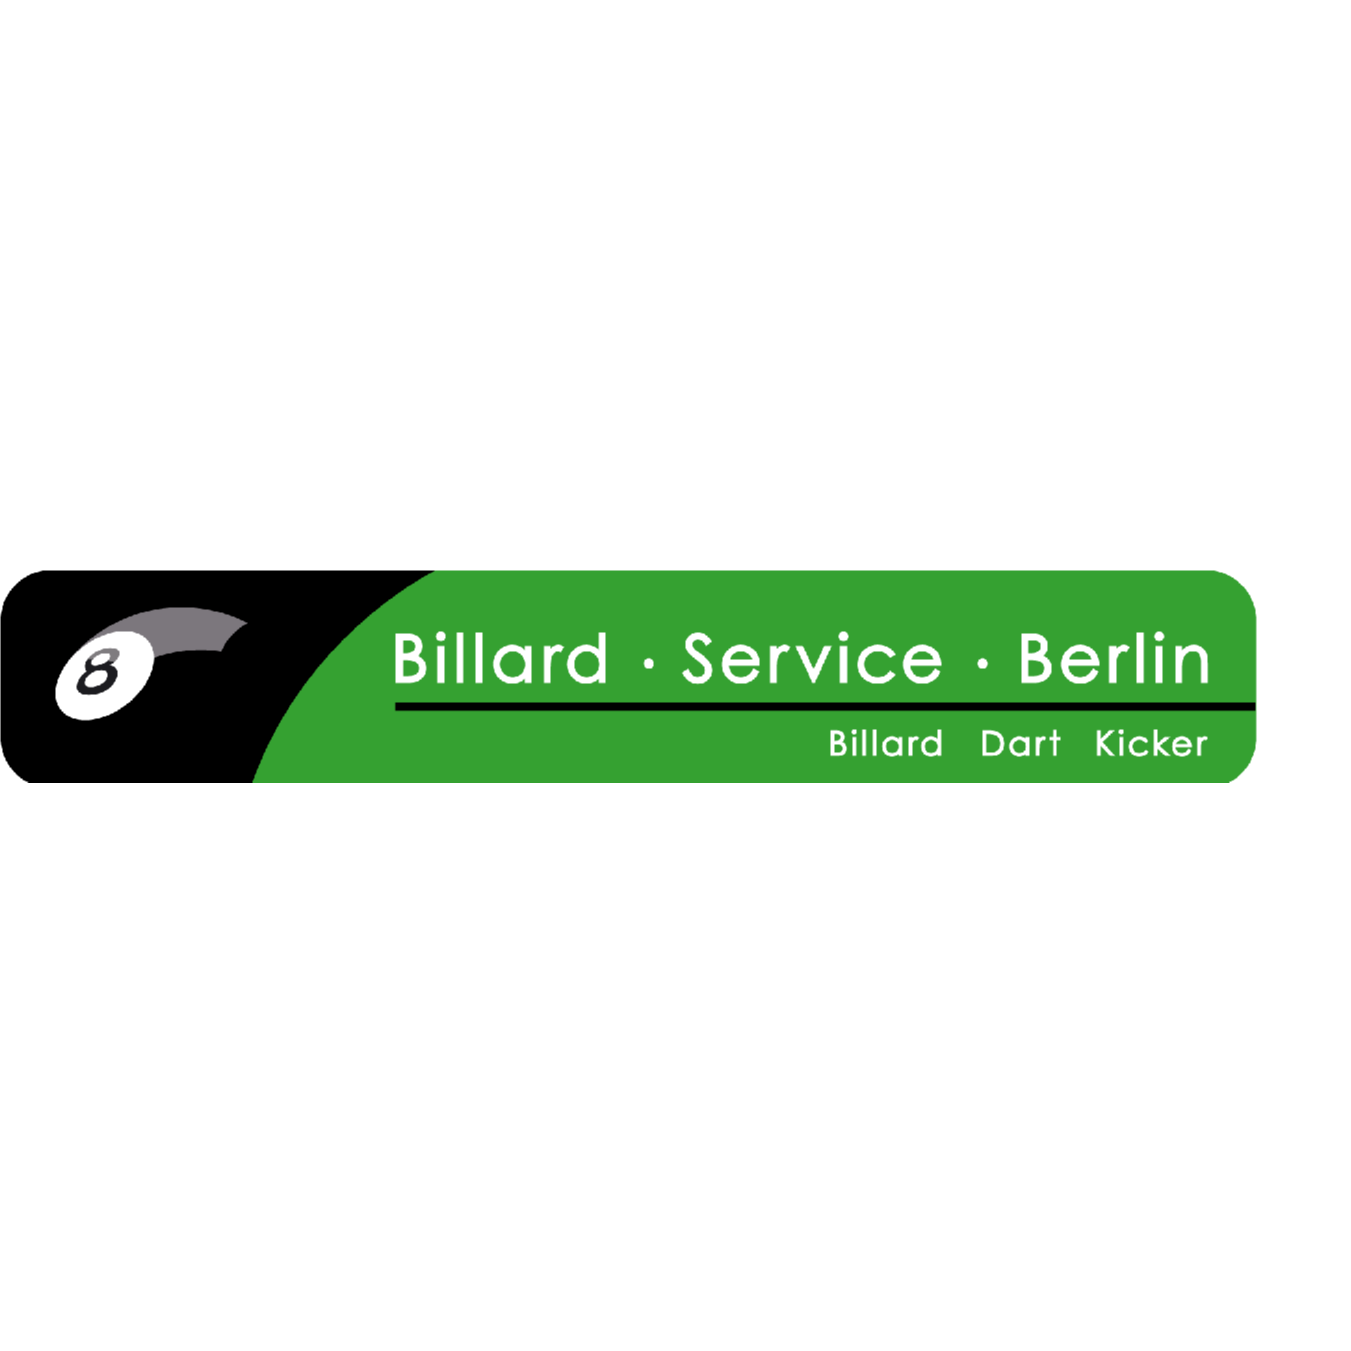 Billard Service Berlin Groß- & Einzelhandel Mewes & Weiershaus Gbr.